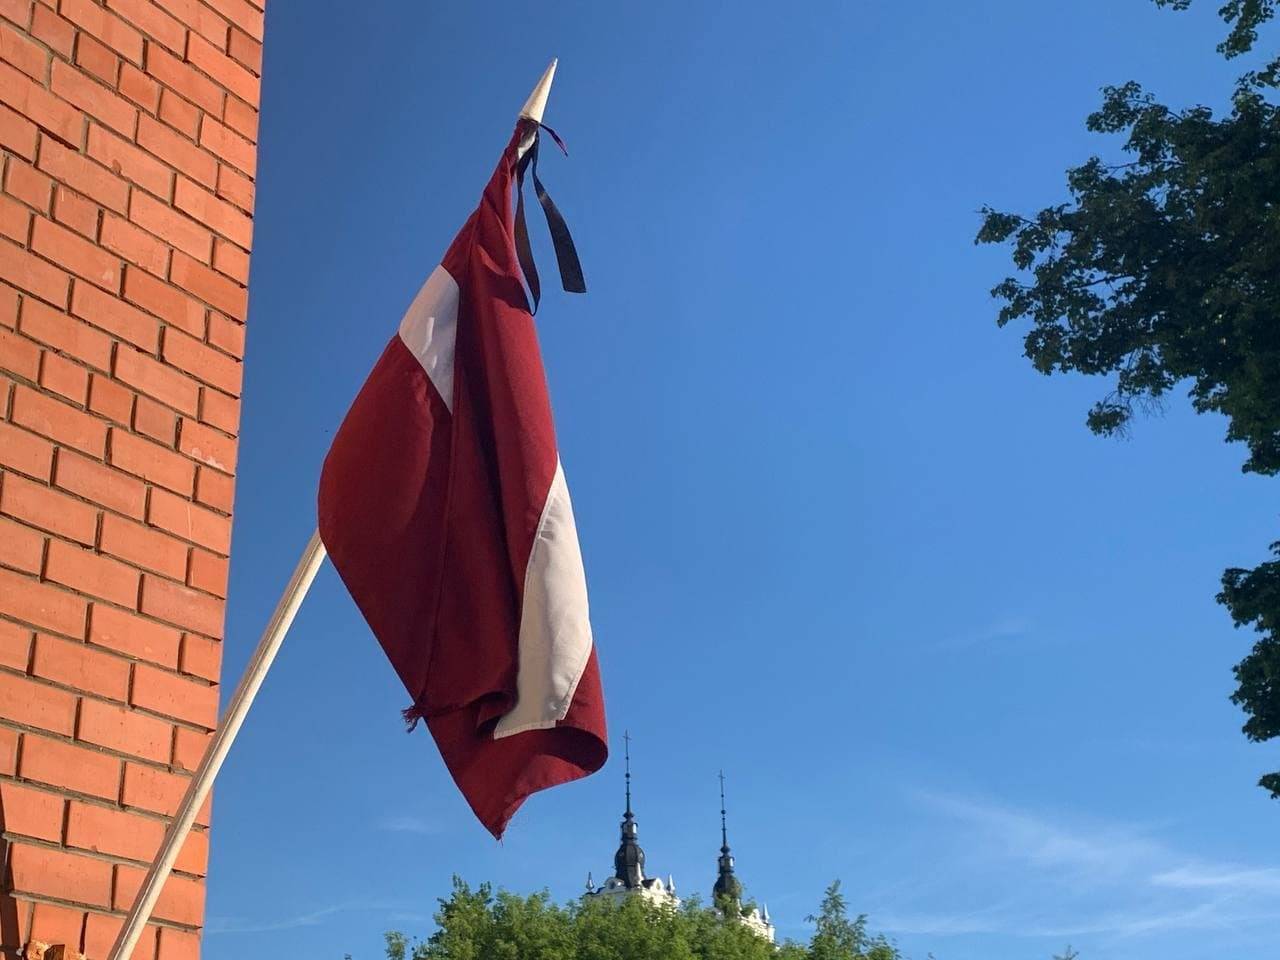 25 марта в Латвии – траур: на домах следует вывесить флаги в траурном оформлении